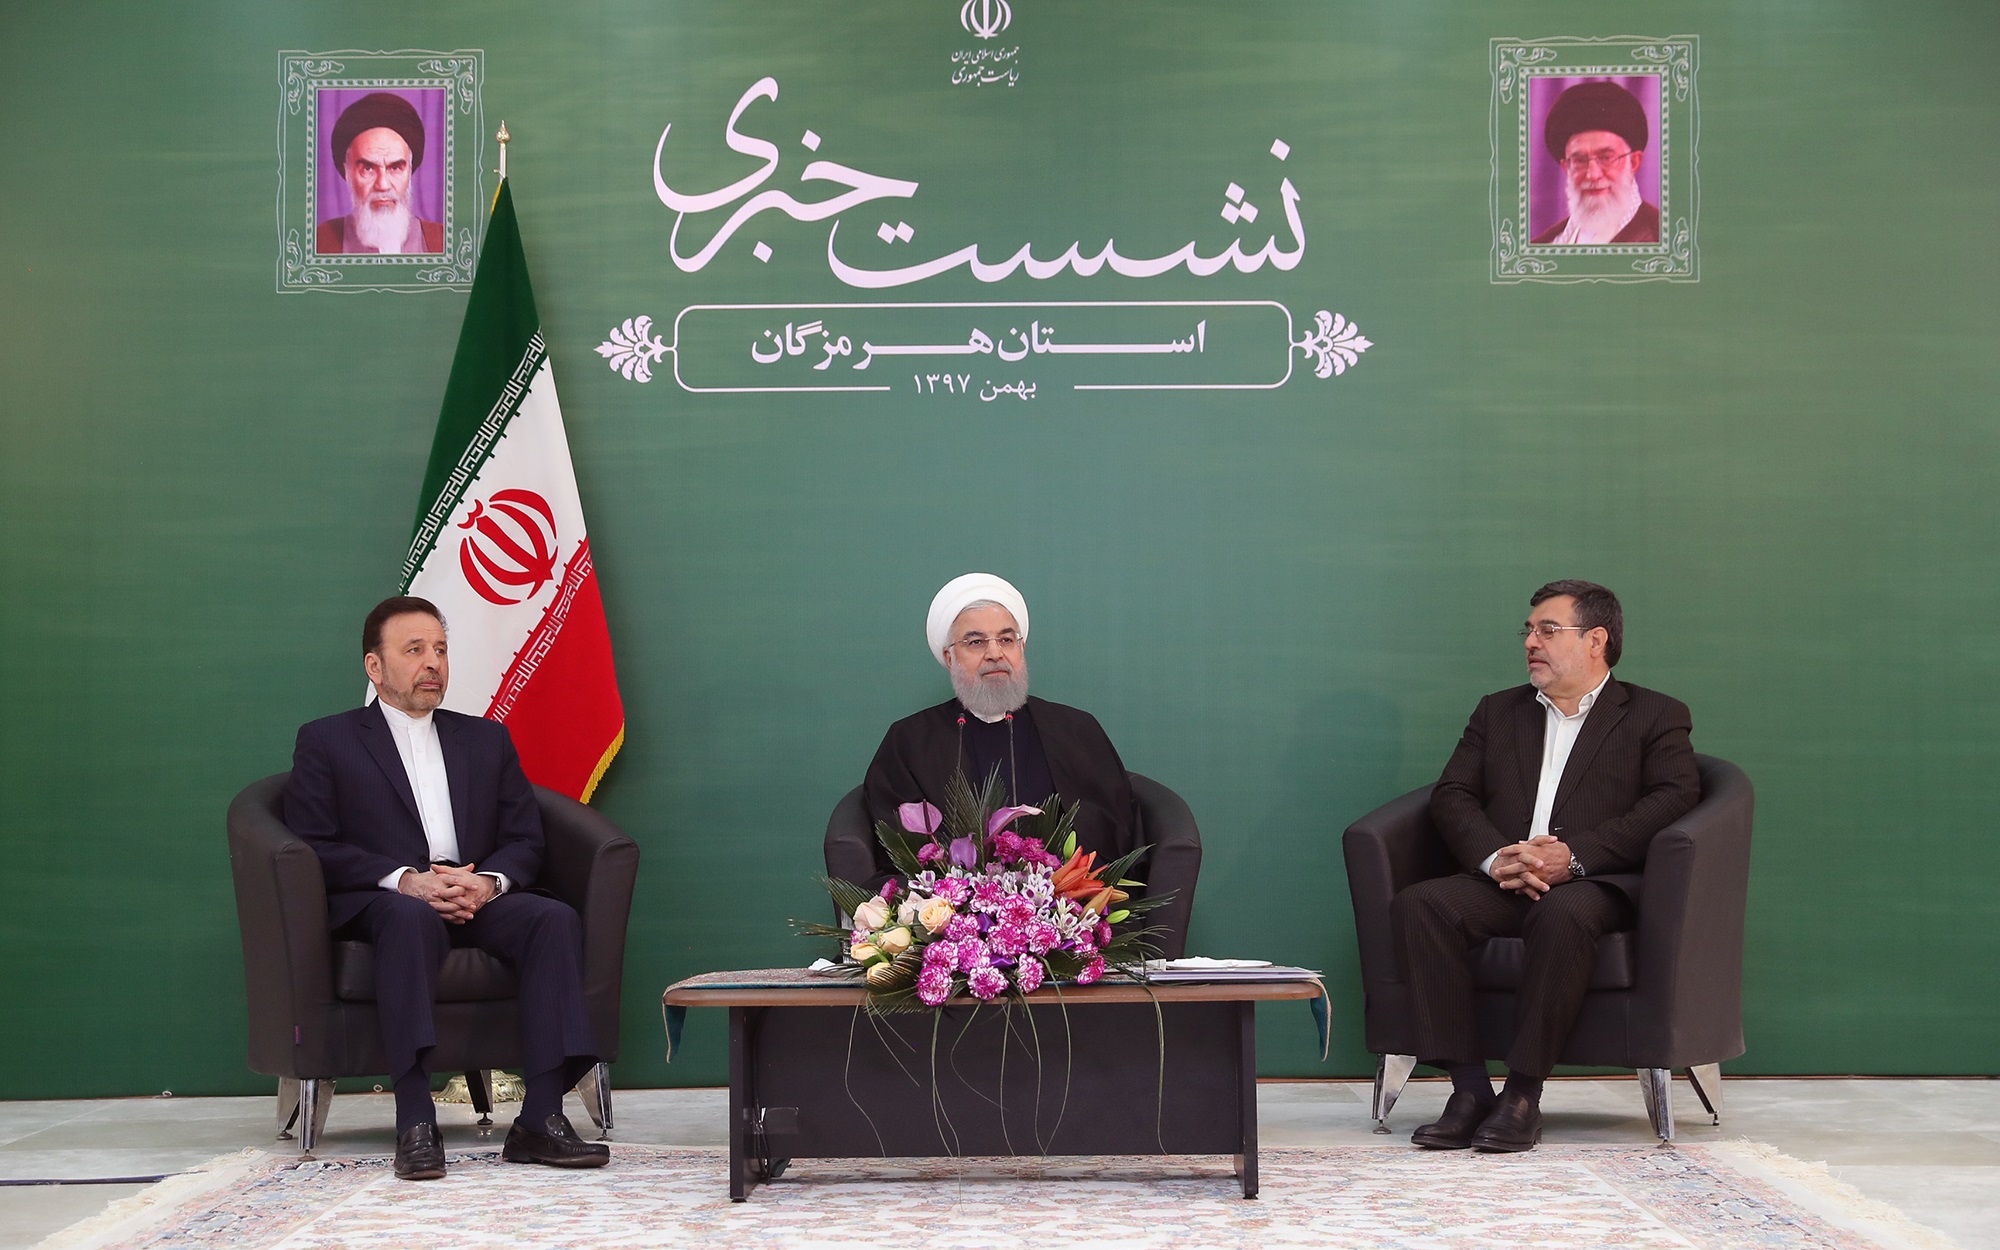 روحانی: دشمن توطئه دی 96 را آغاز کرد به خیال اینکه دی 97 در تهران باشد!| امروز هم روز جنگ اقتصادی است|گفتند سخت ترین تحریمها را اعمال می کنند؛ اما زندگی مردم و توسعه ایران ادامه دارد| در شرایط عادی نیستیم| جنگ اقتصادی از جنگ نظامی سخت‌تر است